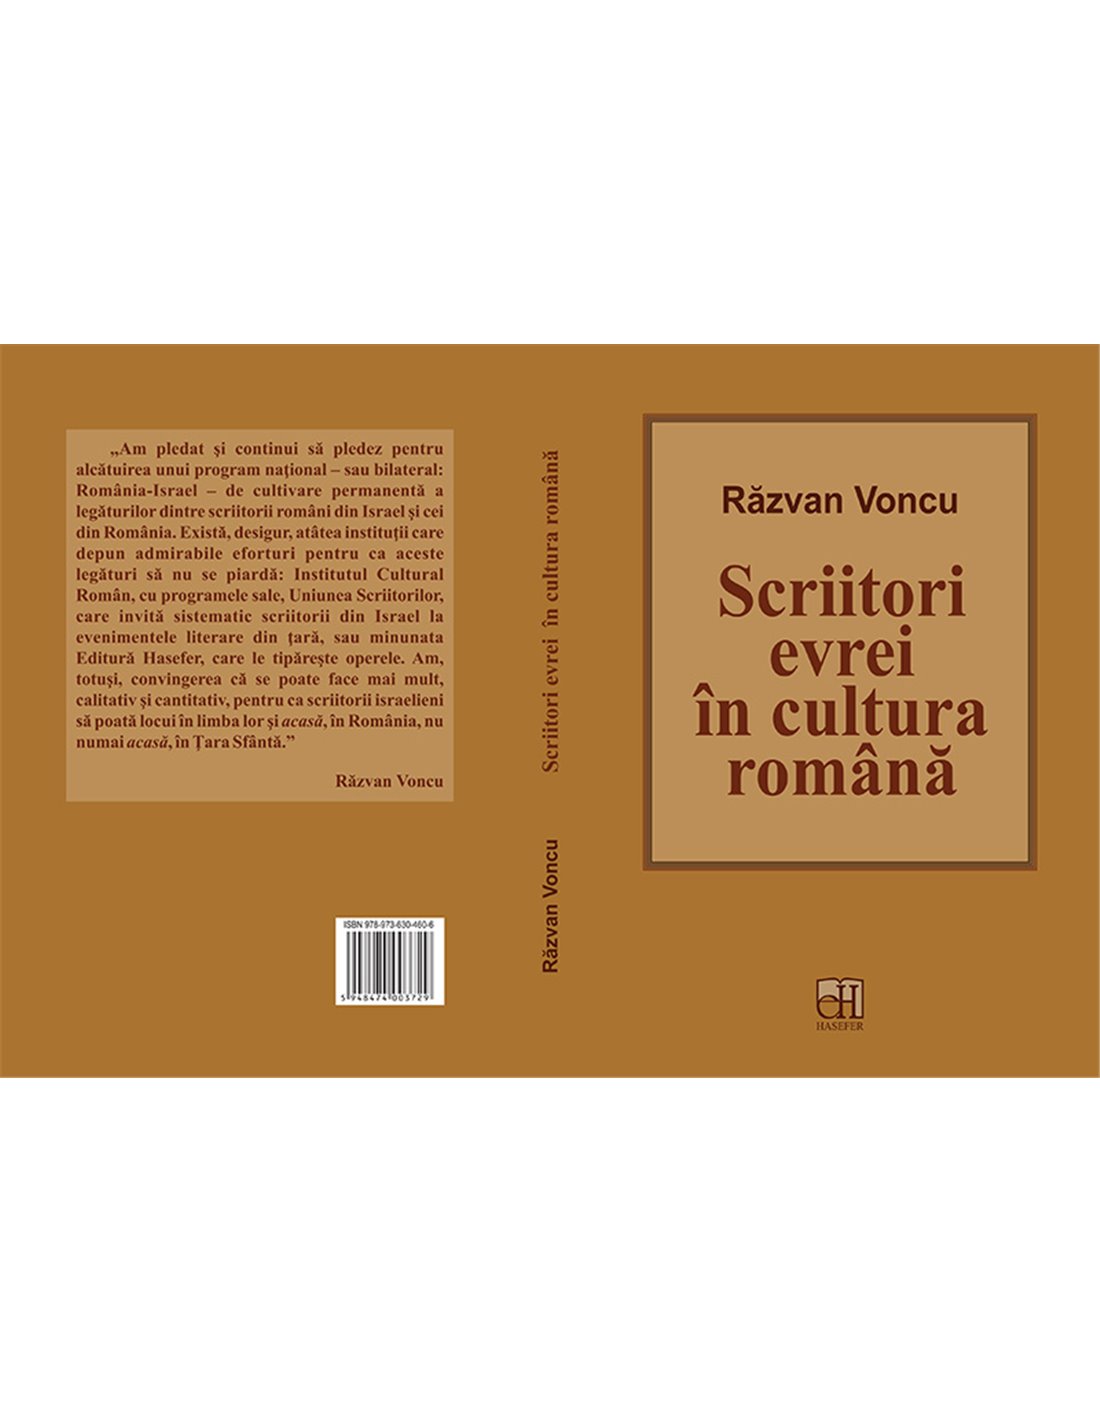 Scriitori evrei in cultura romana - Razvan Voncu | Editura Hasefer